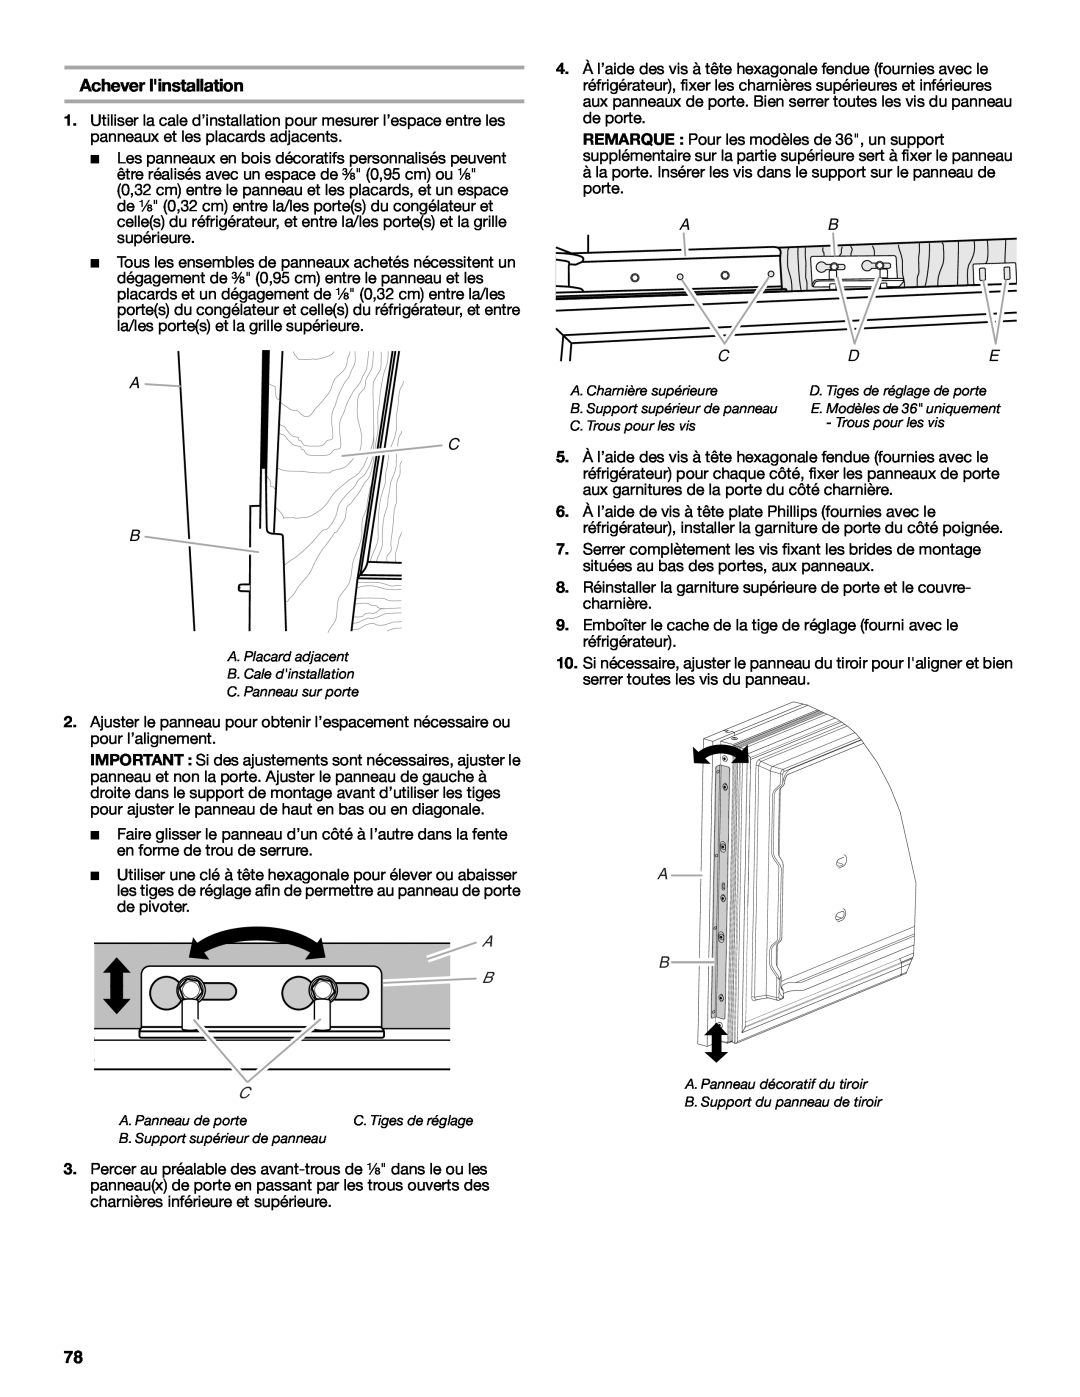 Jenn-Air W10379137A manual Achever linstallation, A C B, A B C 